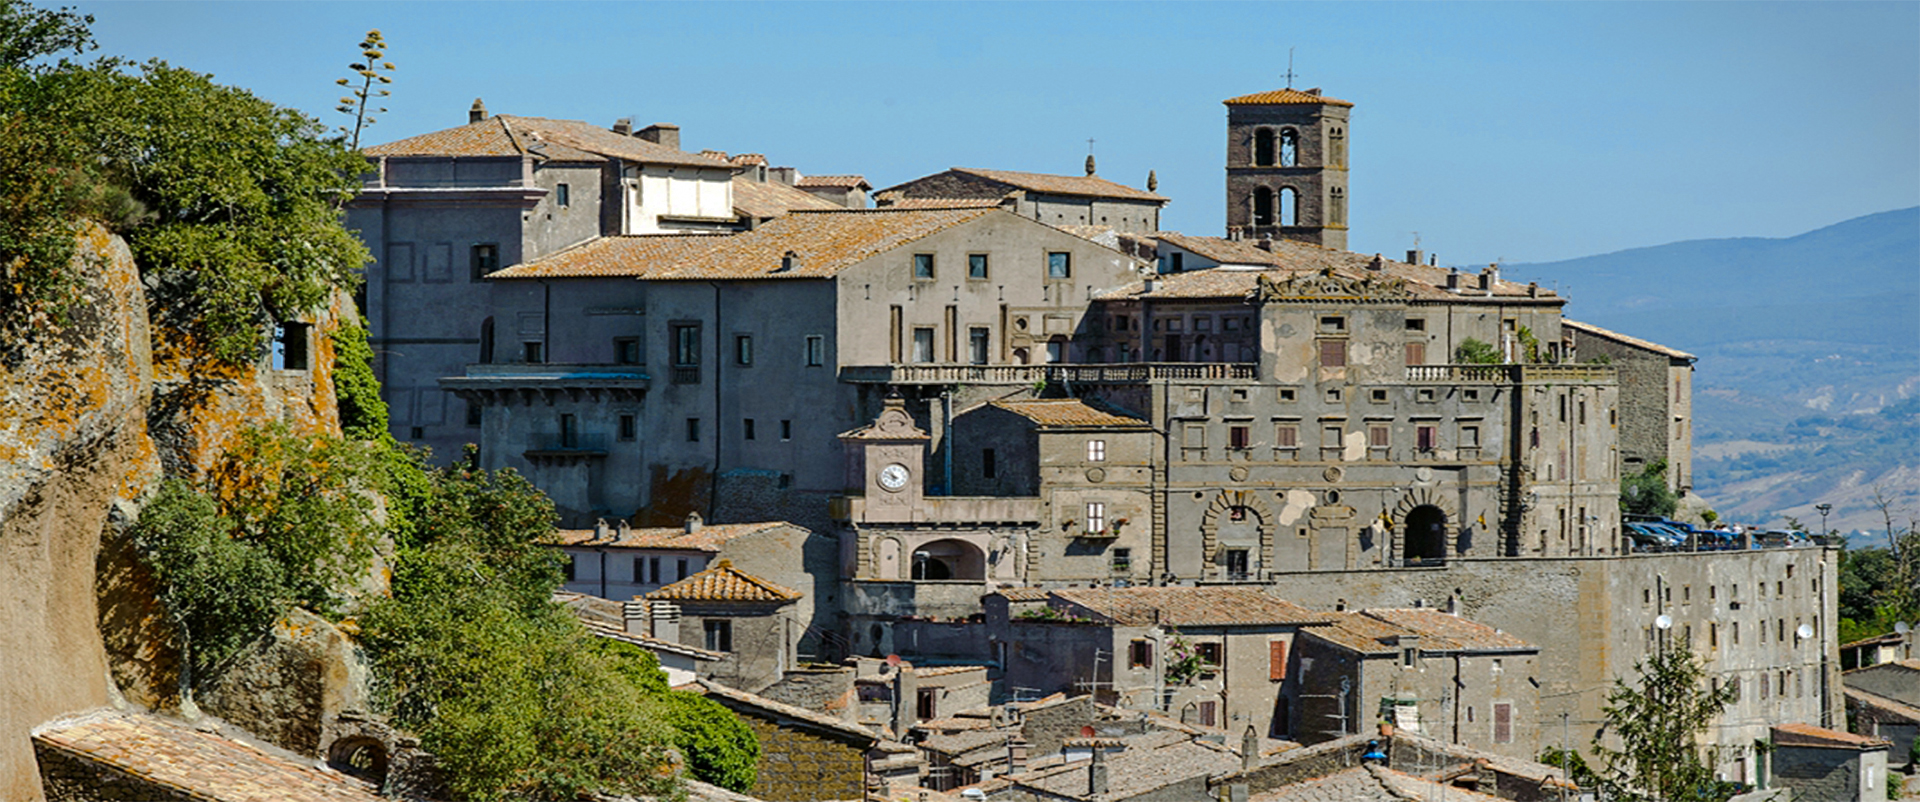 Bomarzo - Veduta del borgo con Palazzo Orsini